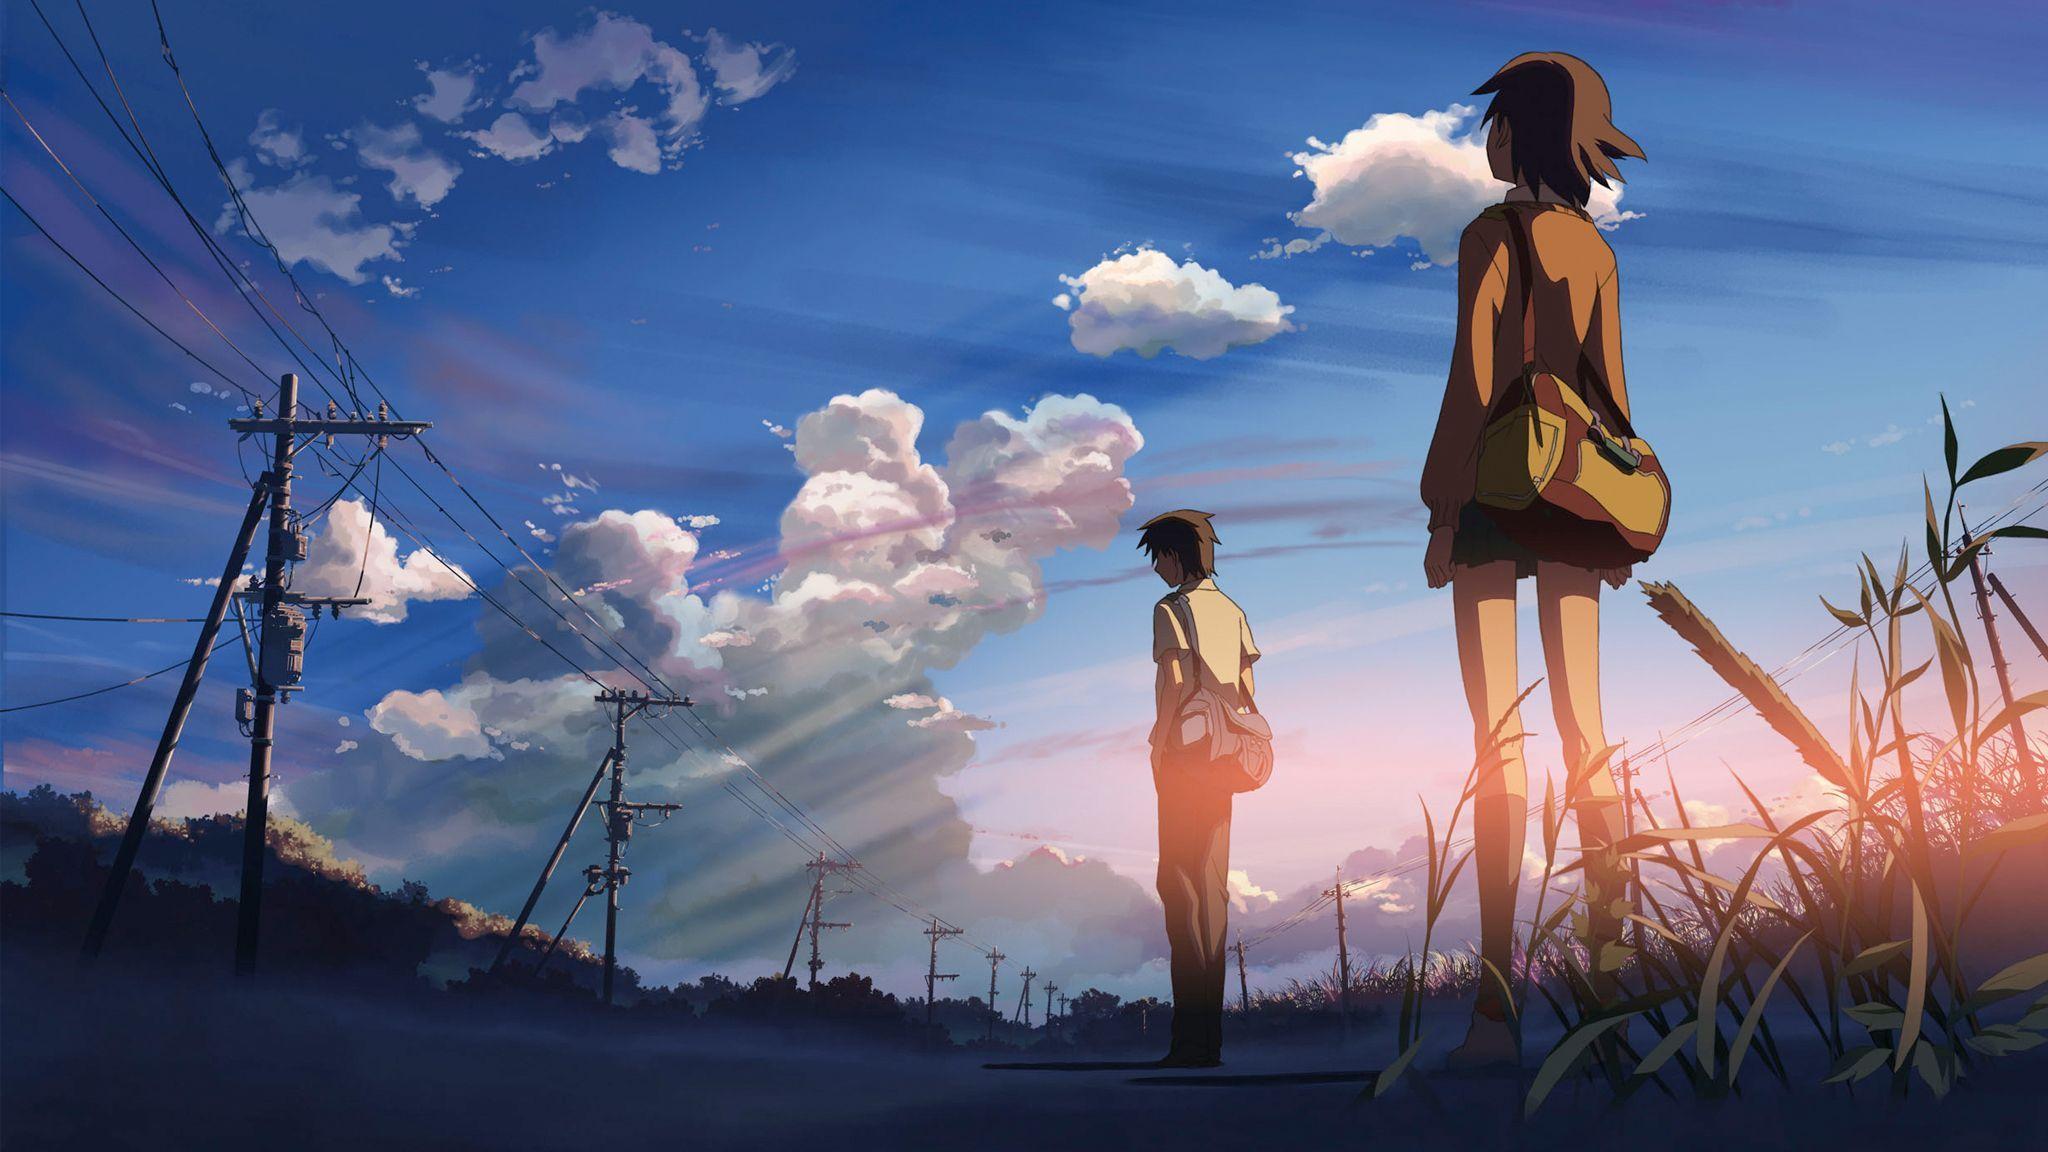 Anime Aesthetic Wallpapers  Top Những Hình Ảnh Đẹp